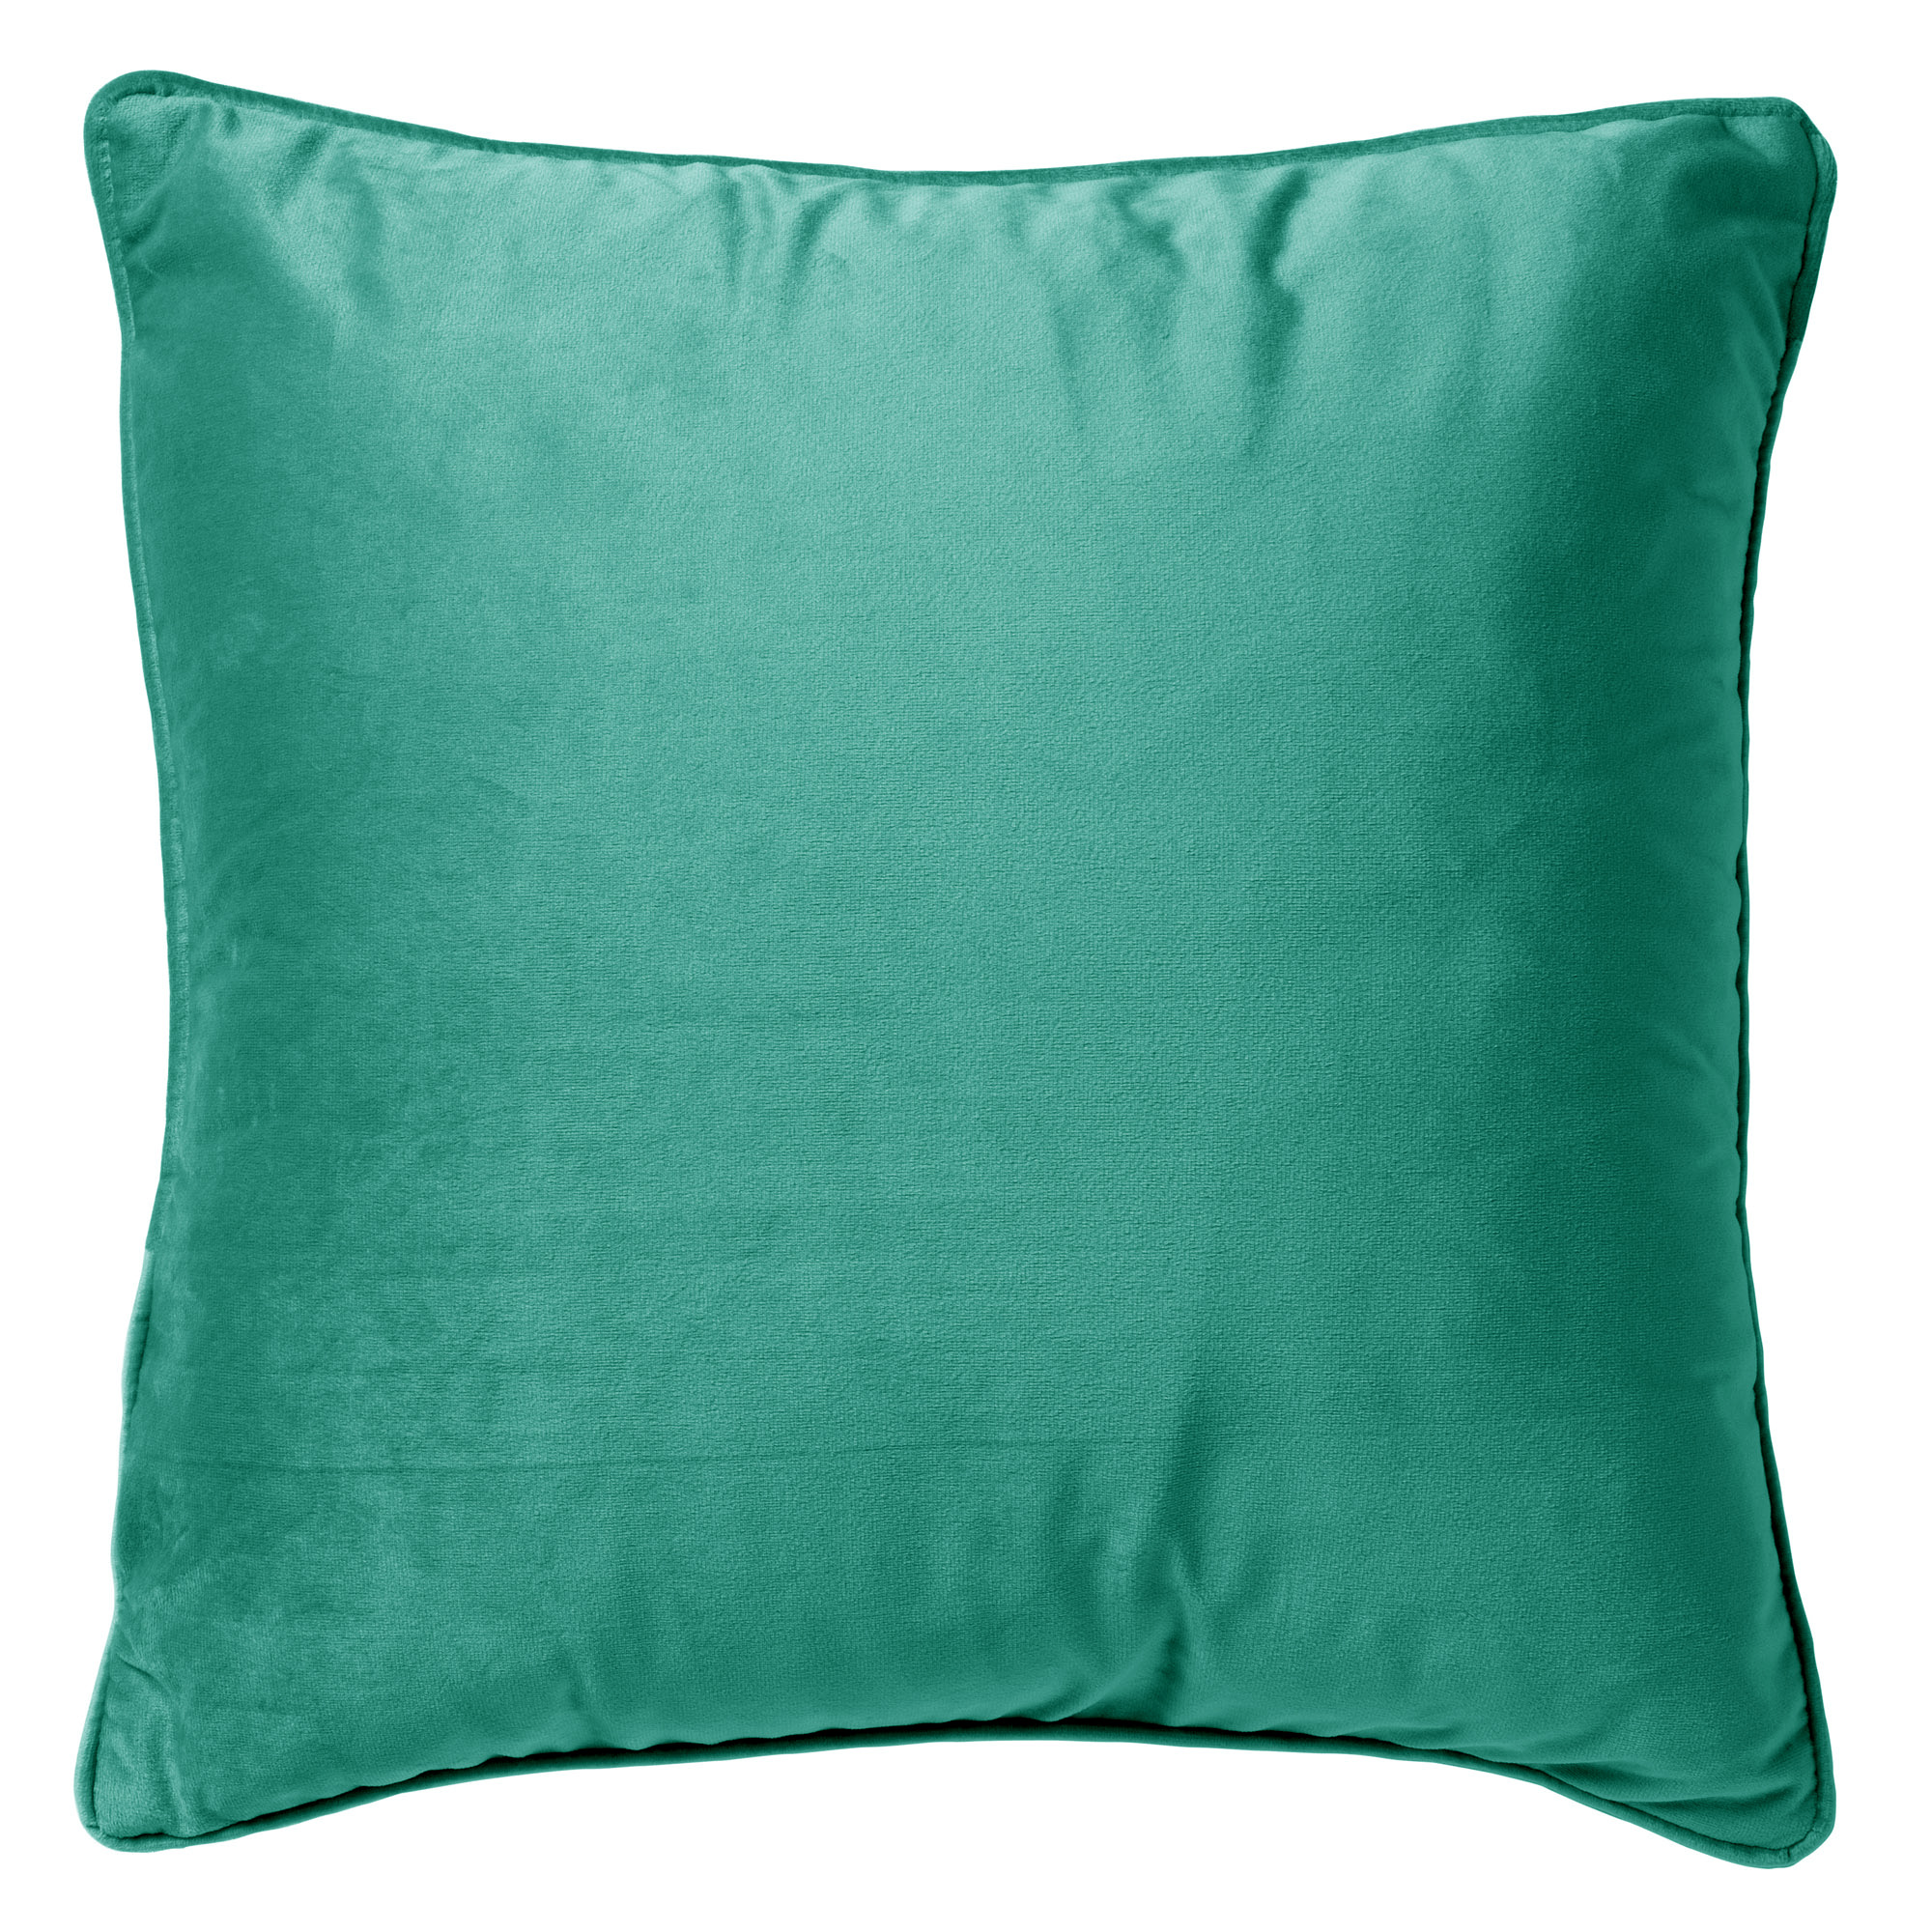 FINN - Cushion 60x60 cm Spearmint - green 